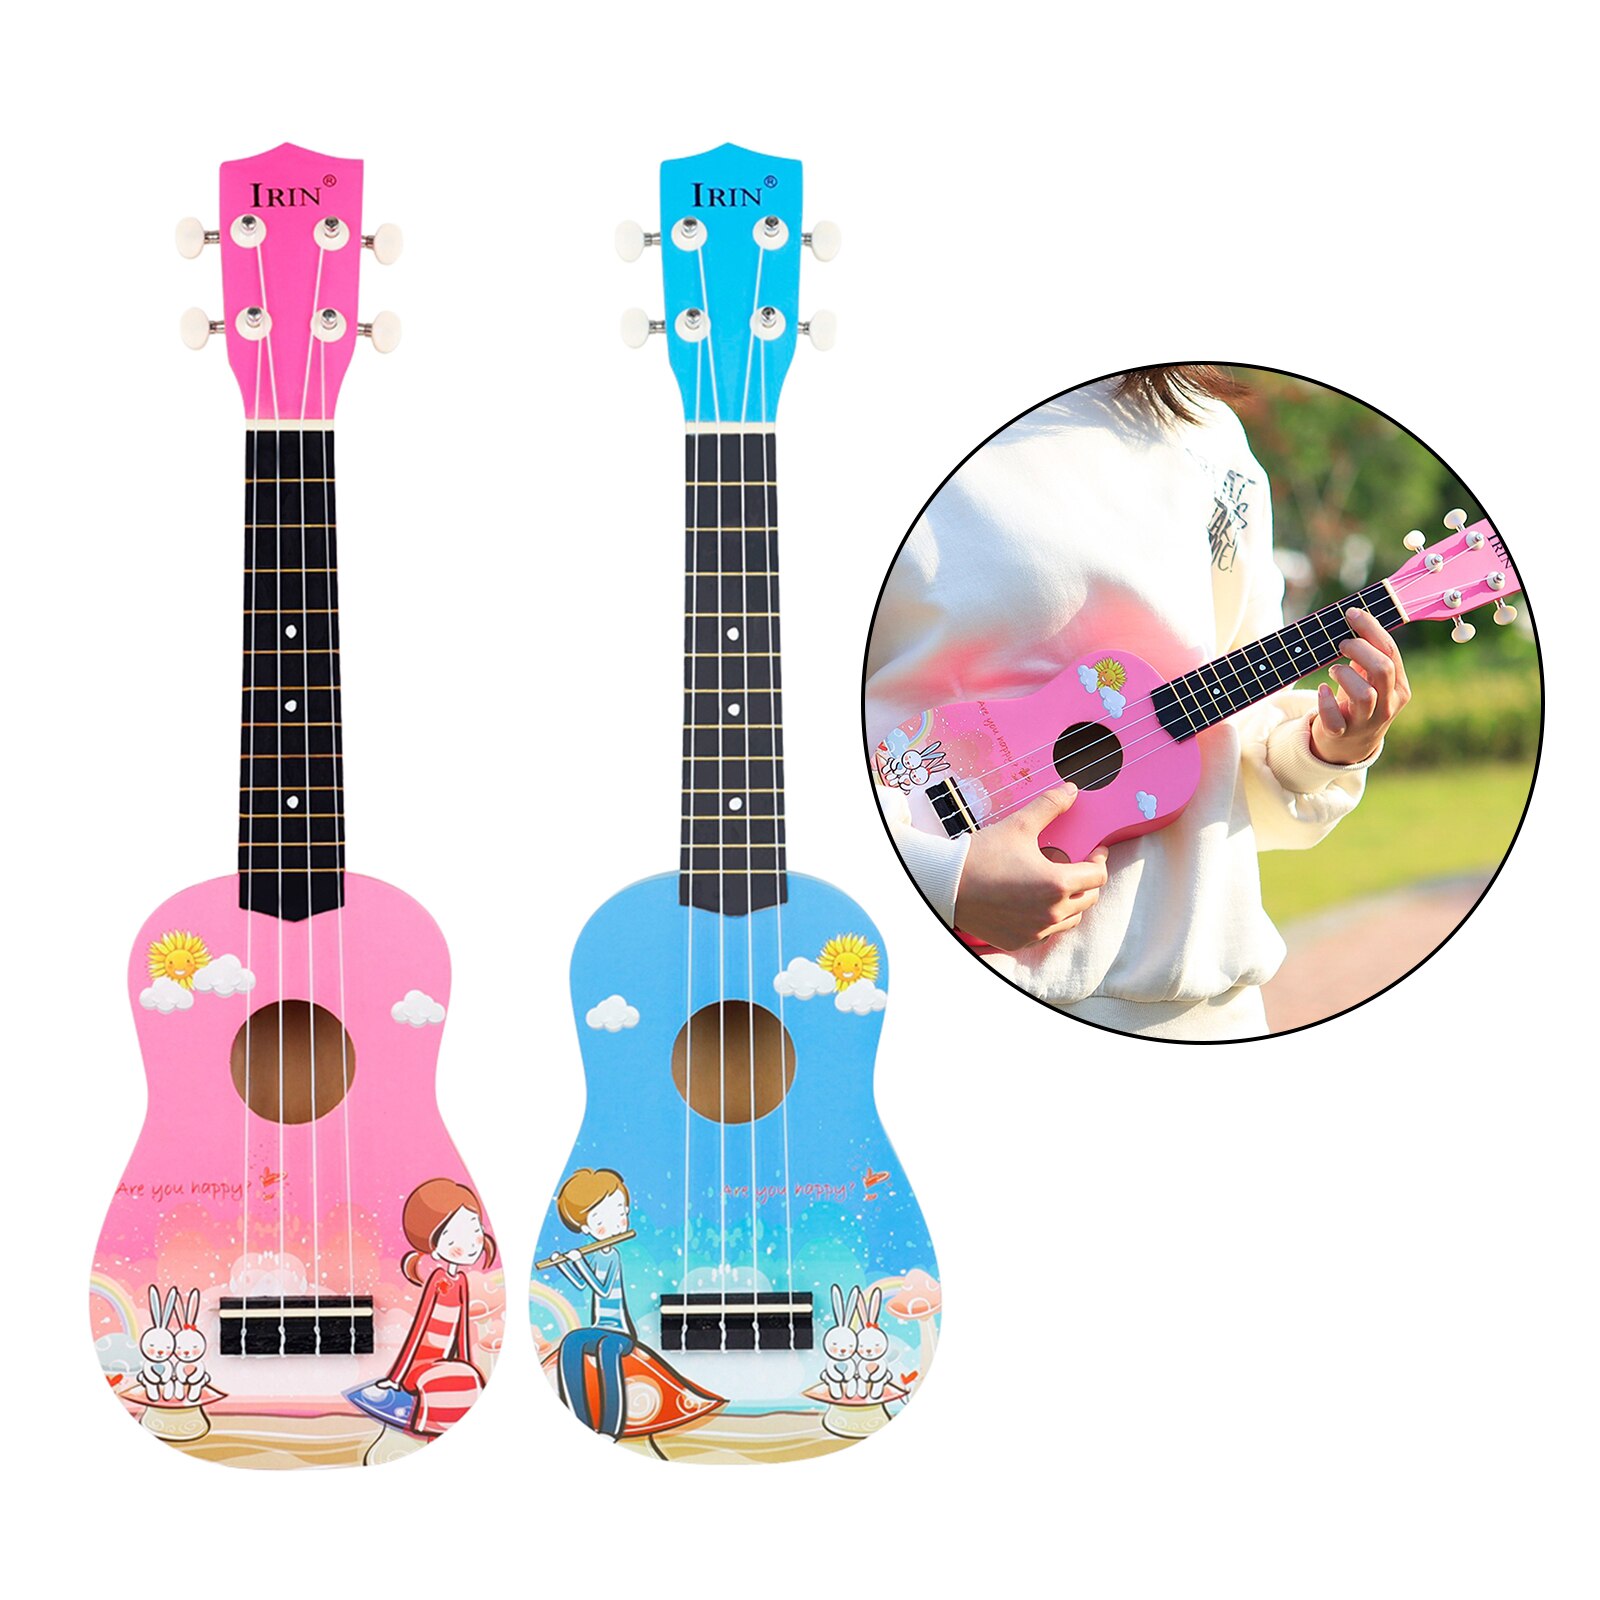 21 Inch Ukelele Sopraan Handgemaakte Gitaar 4 String Ukulele Instrumenten Kerstcadeau Voor Kinderen Beginners Muziekinstrumenten